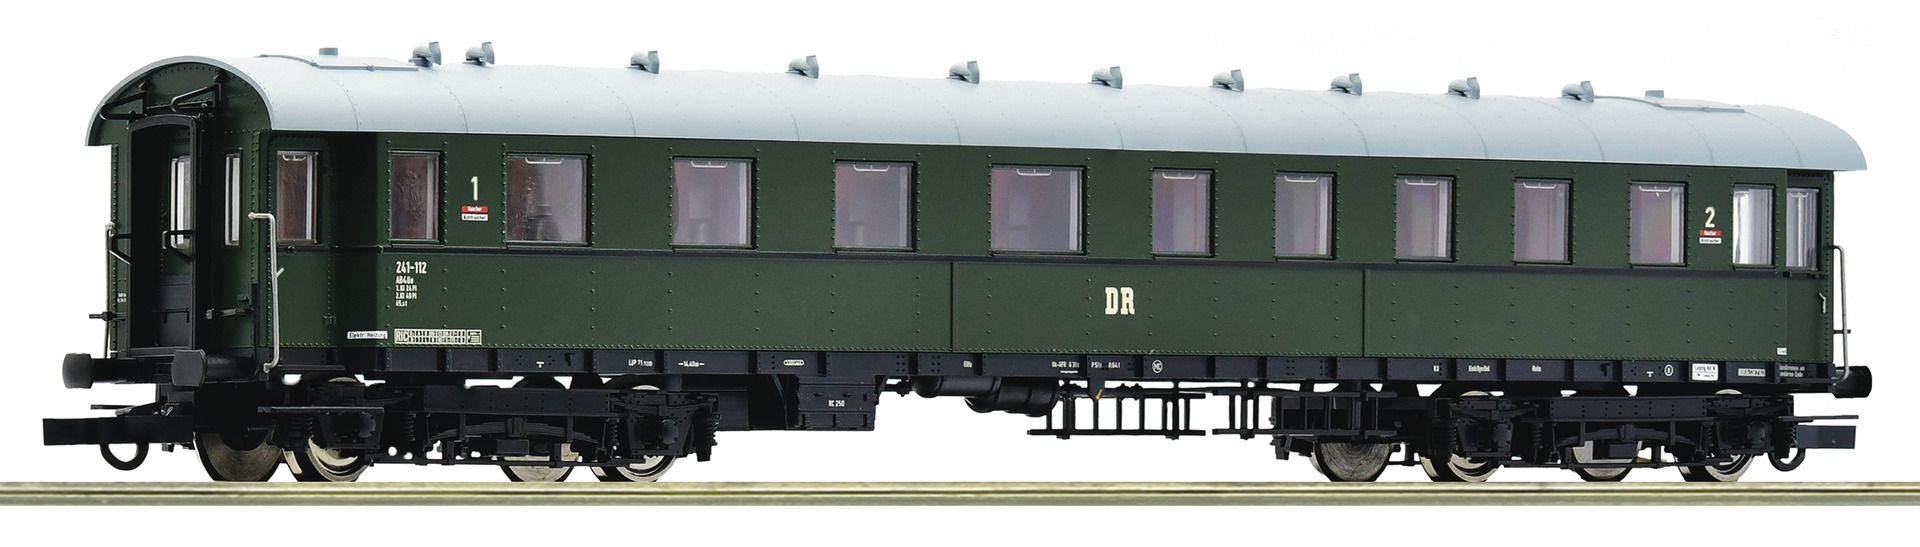 Roco 74861 - Personenwagen AB4üe, 1./2. Klasse, DR, Ep.III